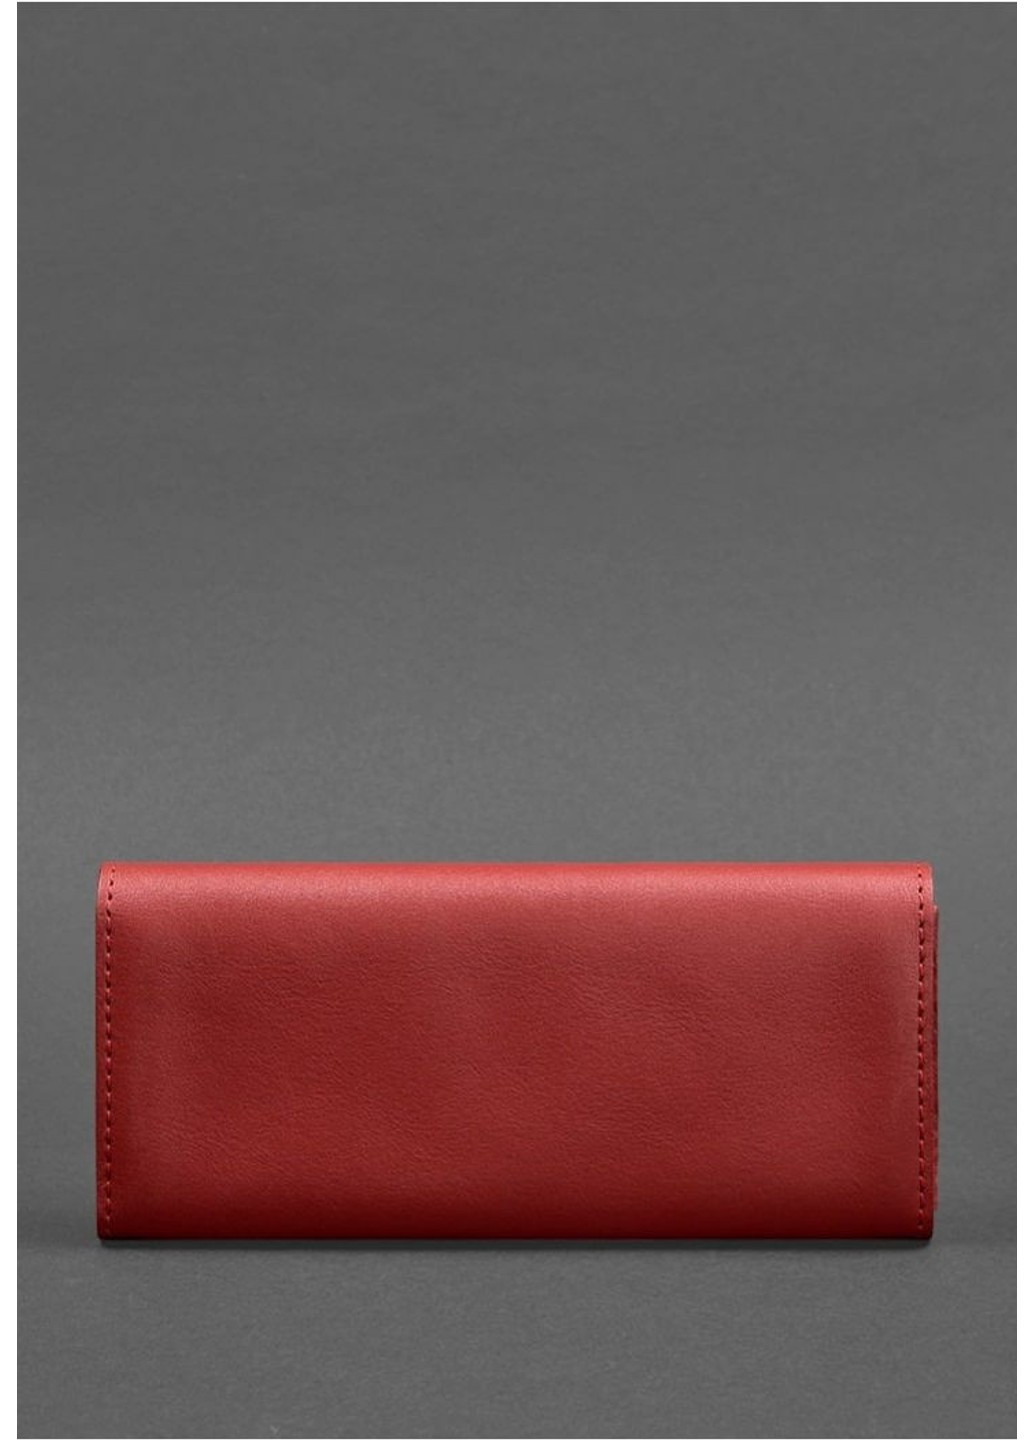 Женский кожаный кошелек Керри 1.0 красный BN-W-1-RED BlankNote (263519266)